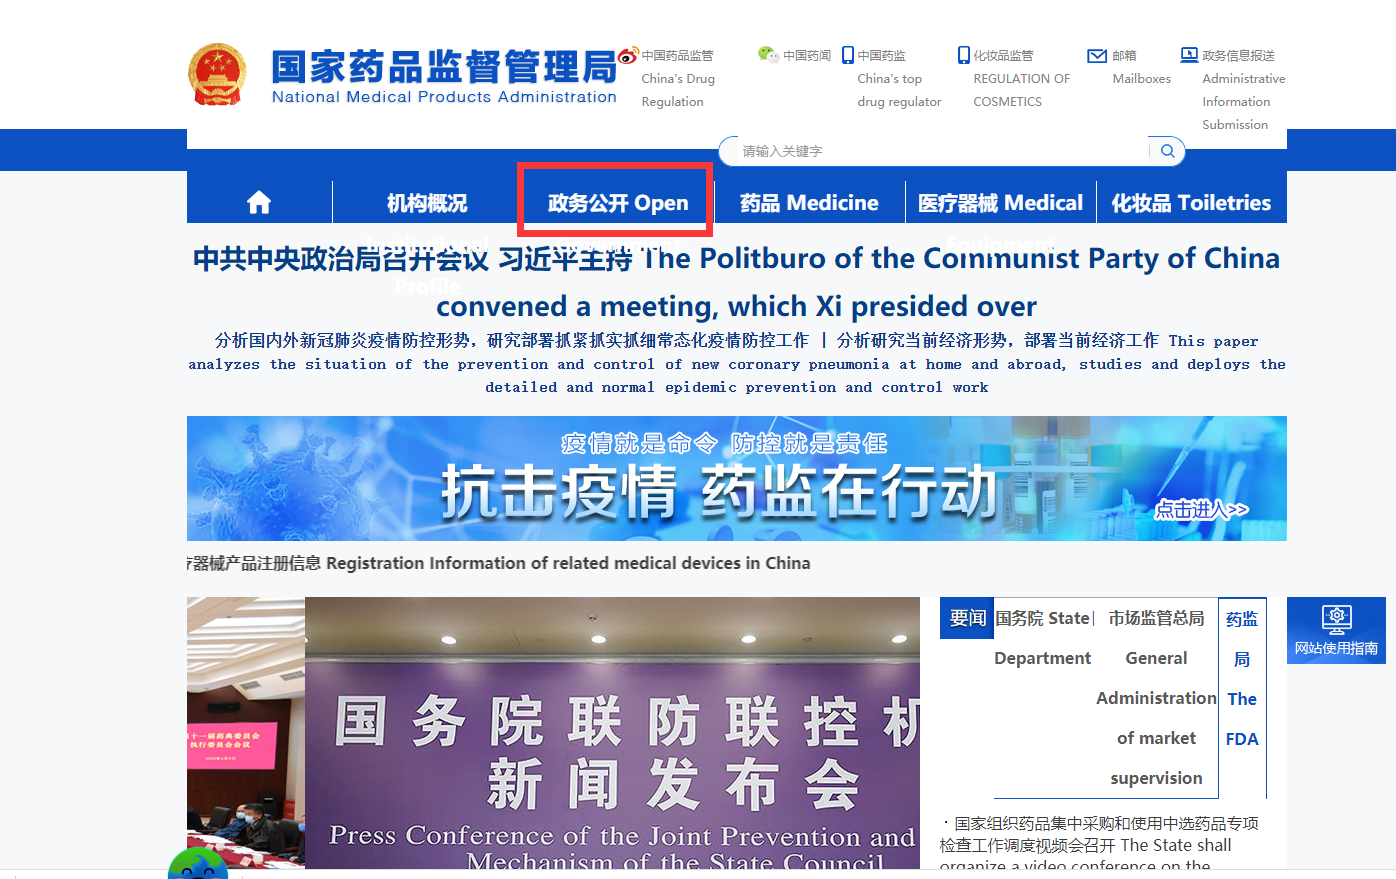 Web1 de la Administración Nacional de Productos Médicos de China